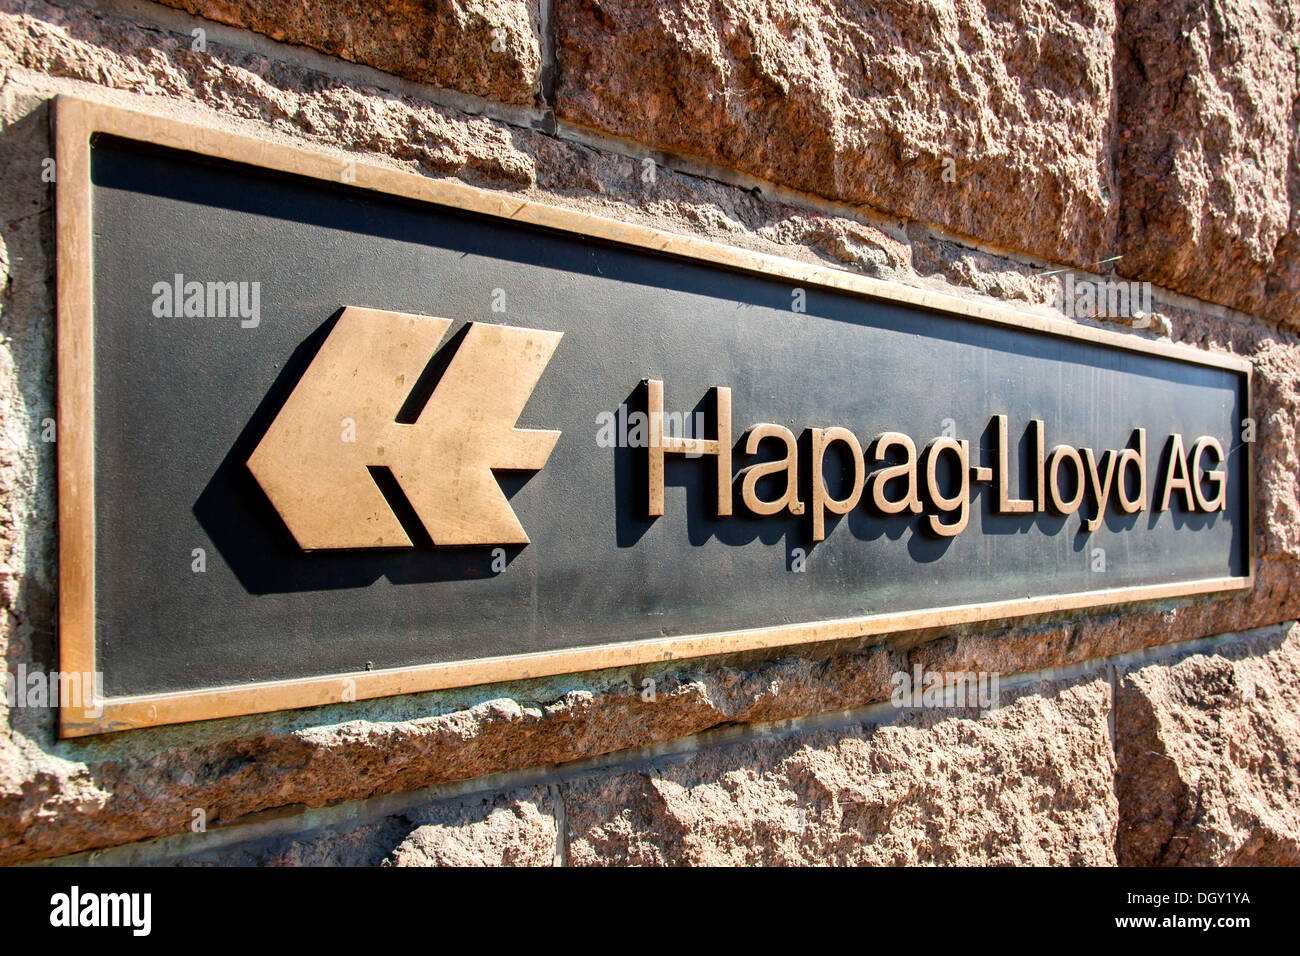 Logo e il digital signage presso la sede dell'impresa di trasporti e logistica Hapag-Lloyd AG, Hamburg, Amburgo, Germania Foto Stock